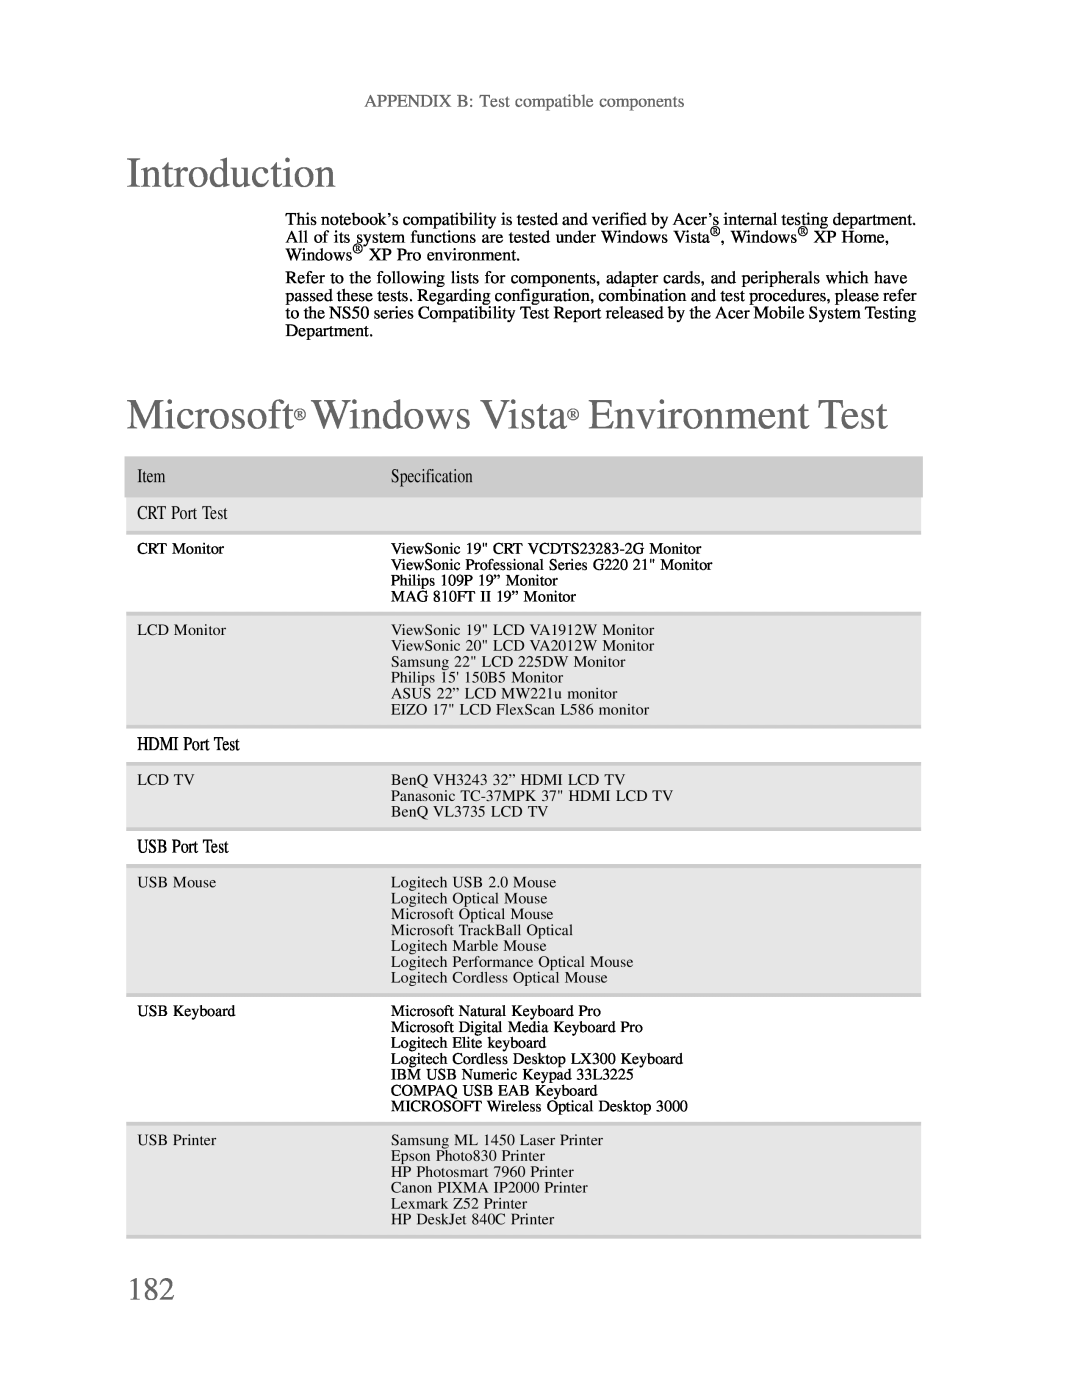 Gateway p-79 manual Microsoft Windows Vista Environment Test, Introduction, APPENDIX B Test compatible components 